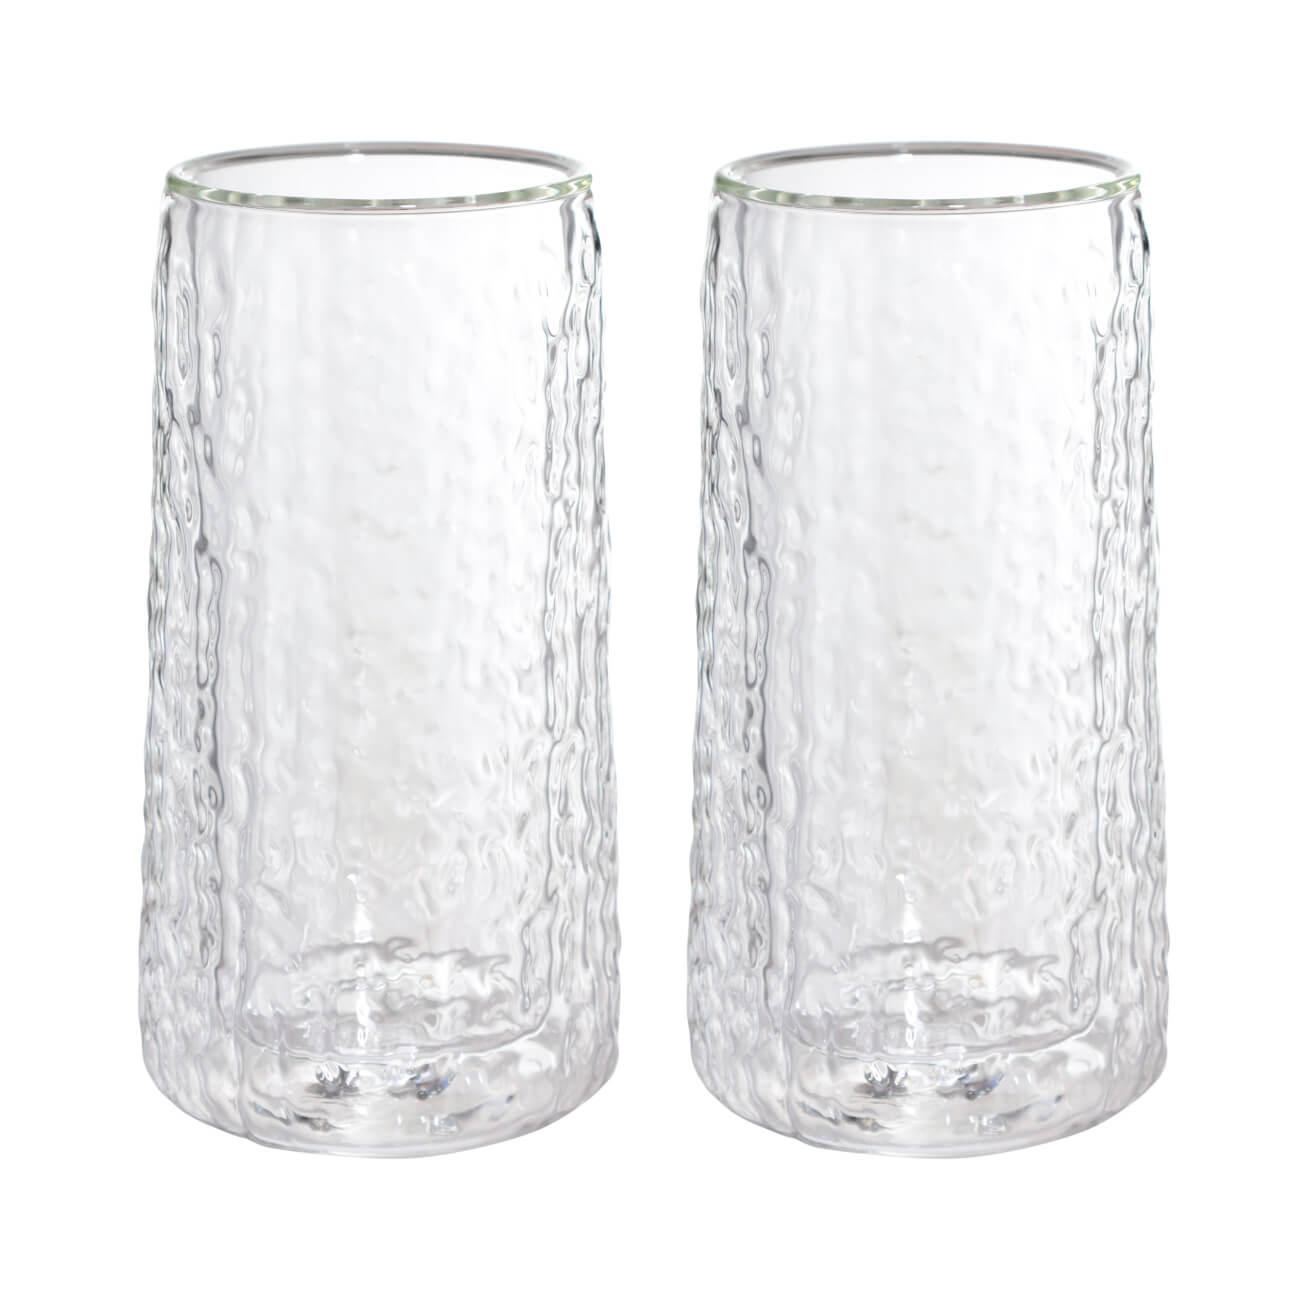 бокал для вина 400 мл 2 шт стекло перламутр ripply polar Стакан, 320 мл, 2 шт, стекло Б, Air ripply